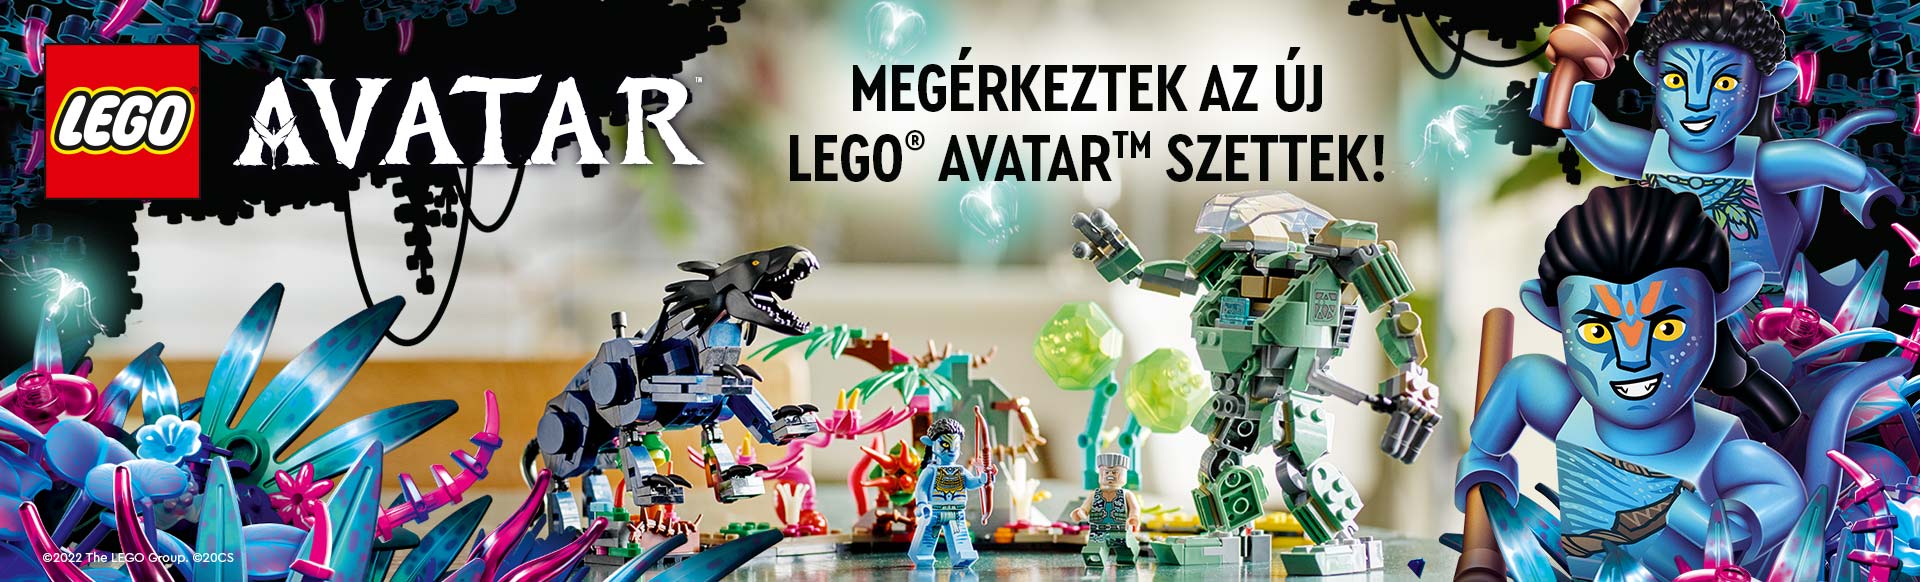 Megérkeztek az új LEGO® Avatar™ szettek!